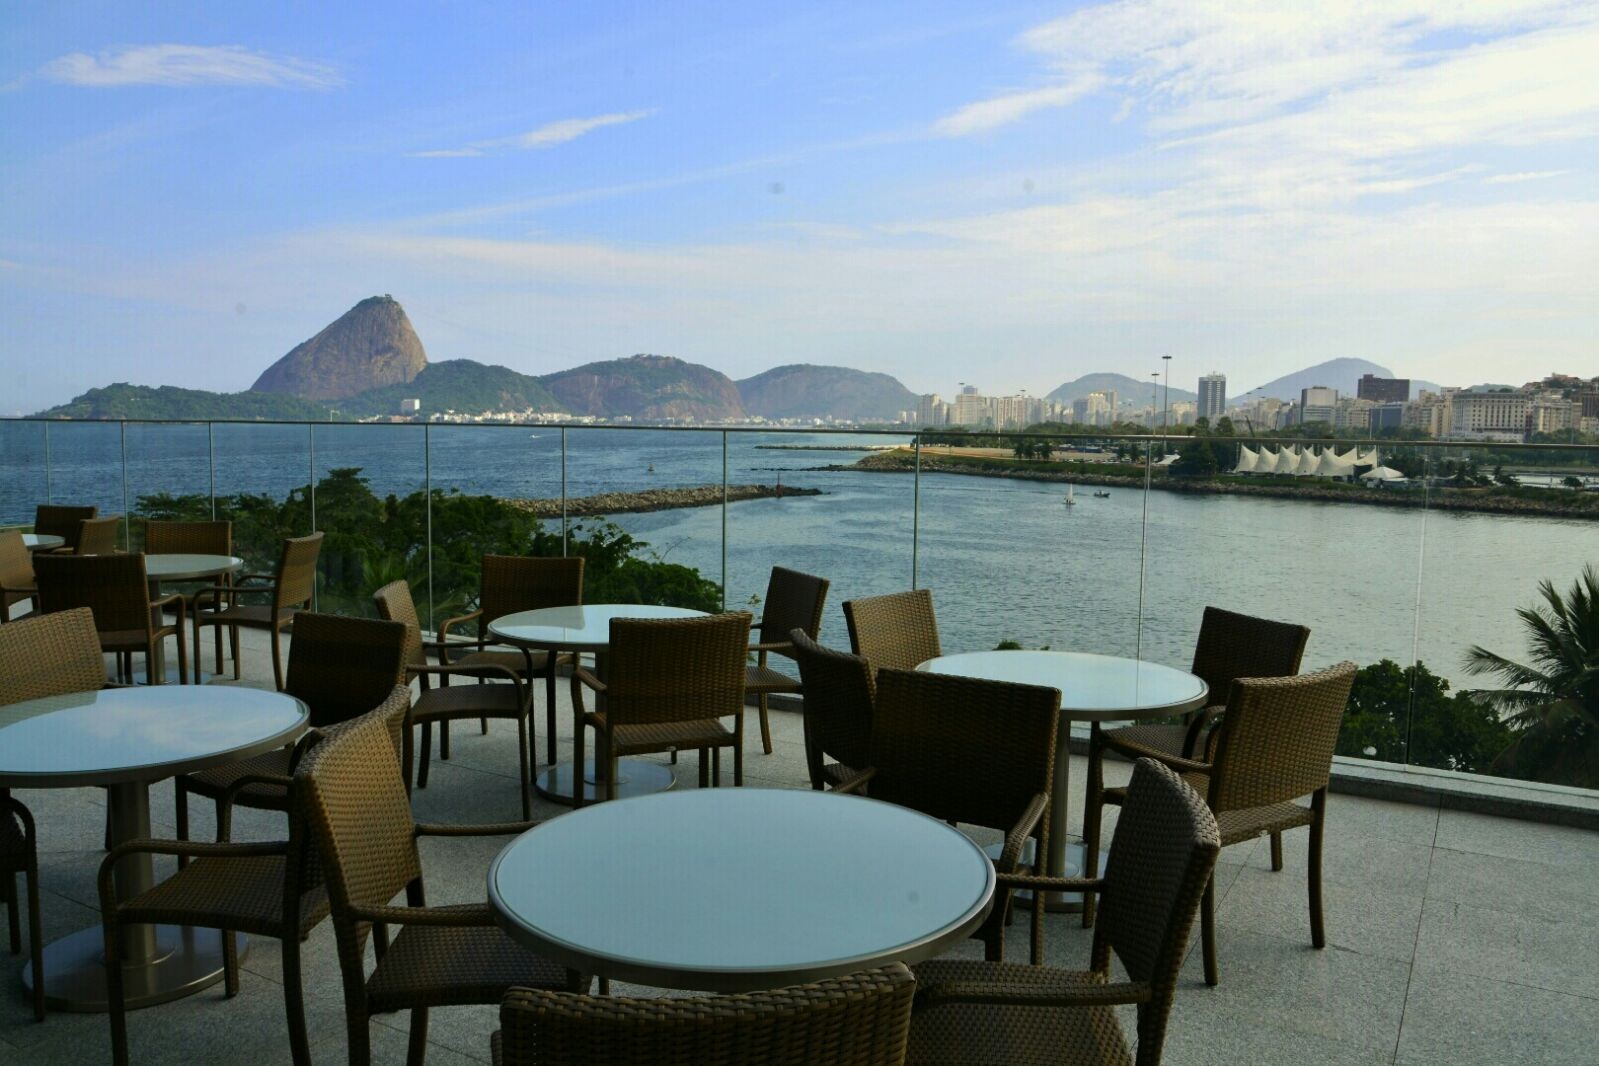 Vista do bar do hotel do Bossa Nova Mall (Foto: Divulgação)